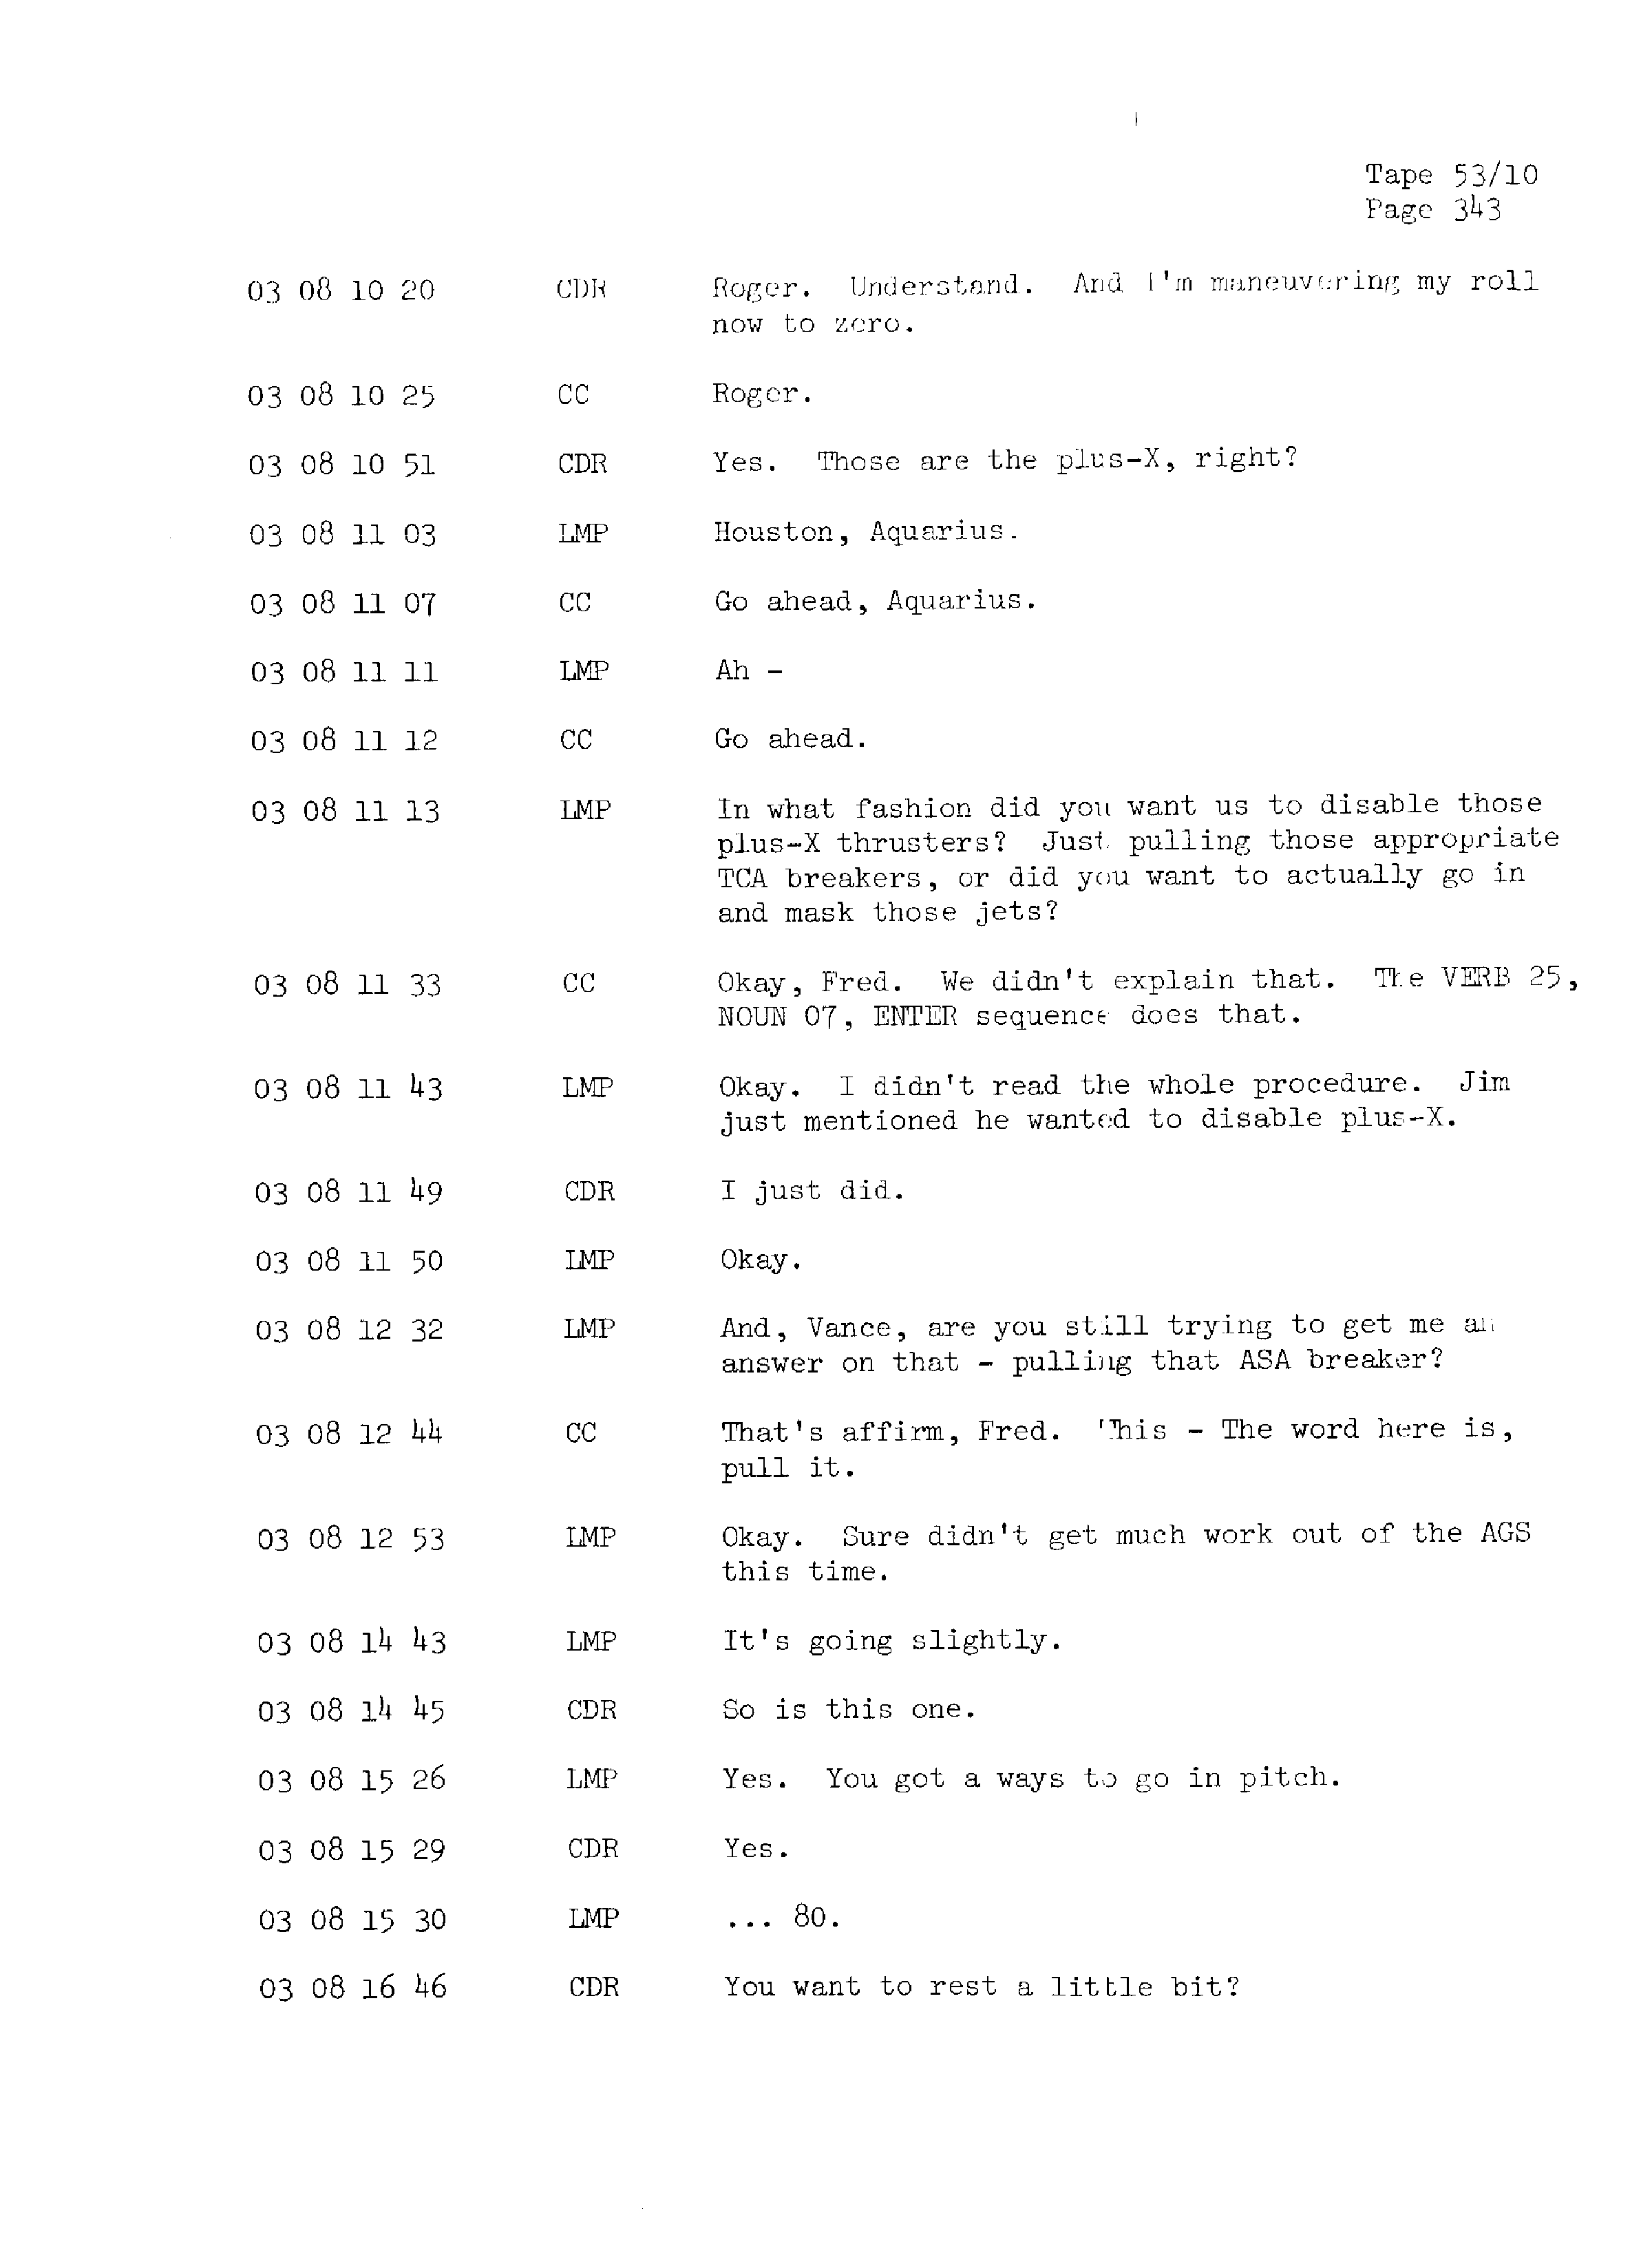 Page 350 of Apollo 13’s original transcript